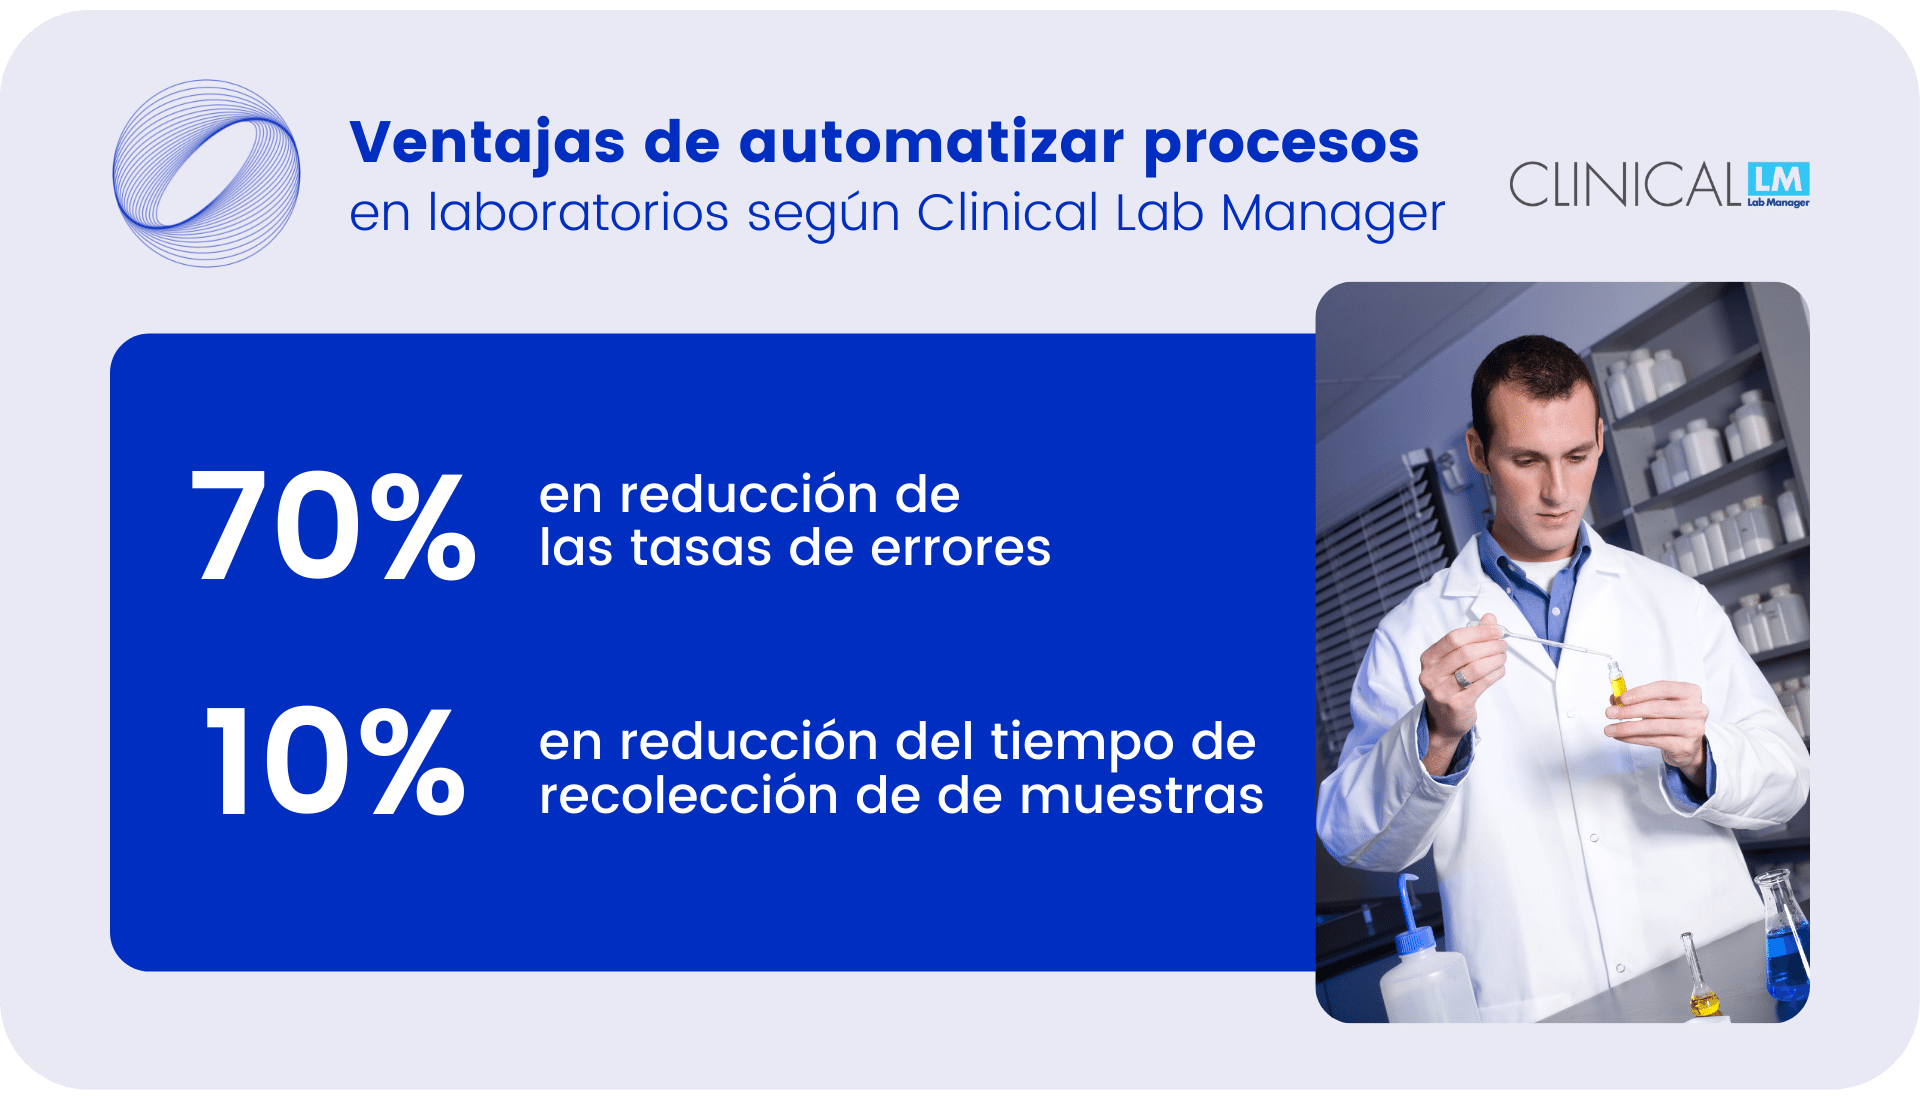 Ventajas de automatizar procesos en laboratorios según Clinical Lab Manager